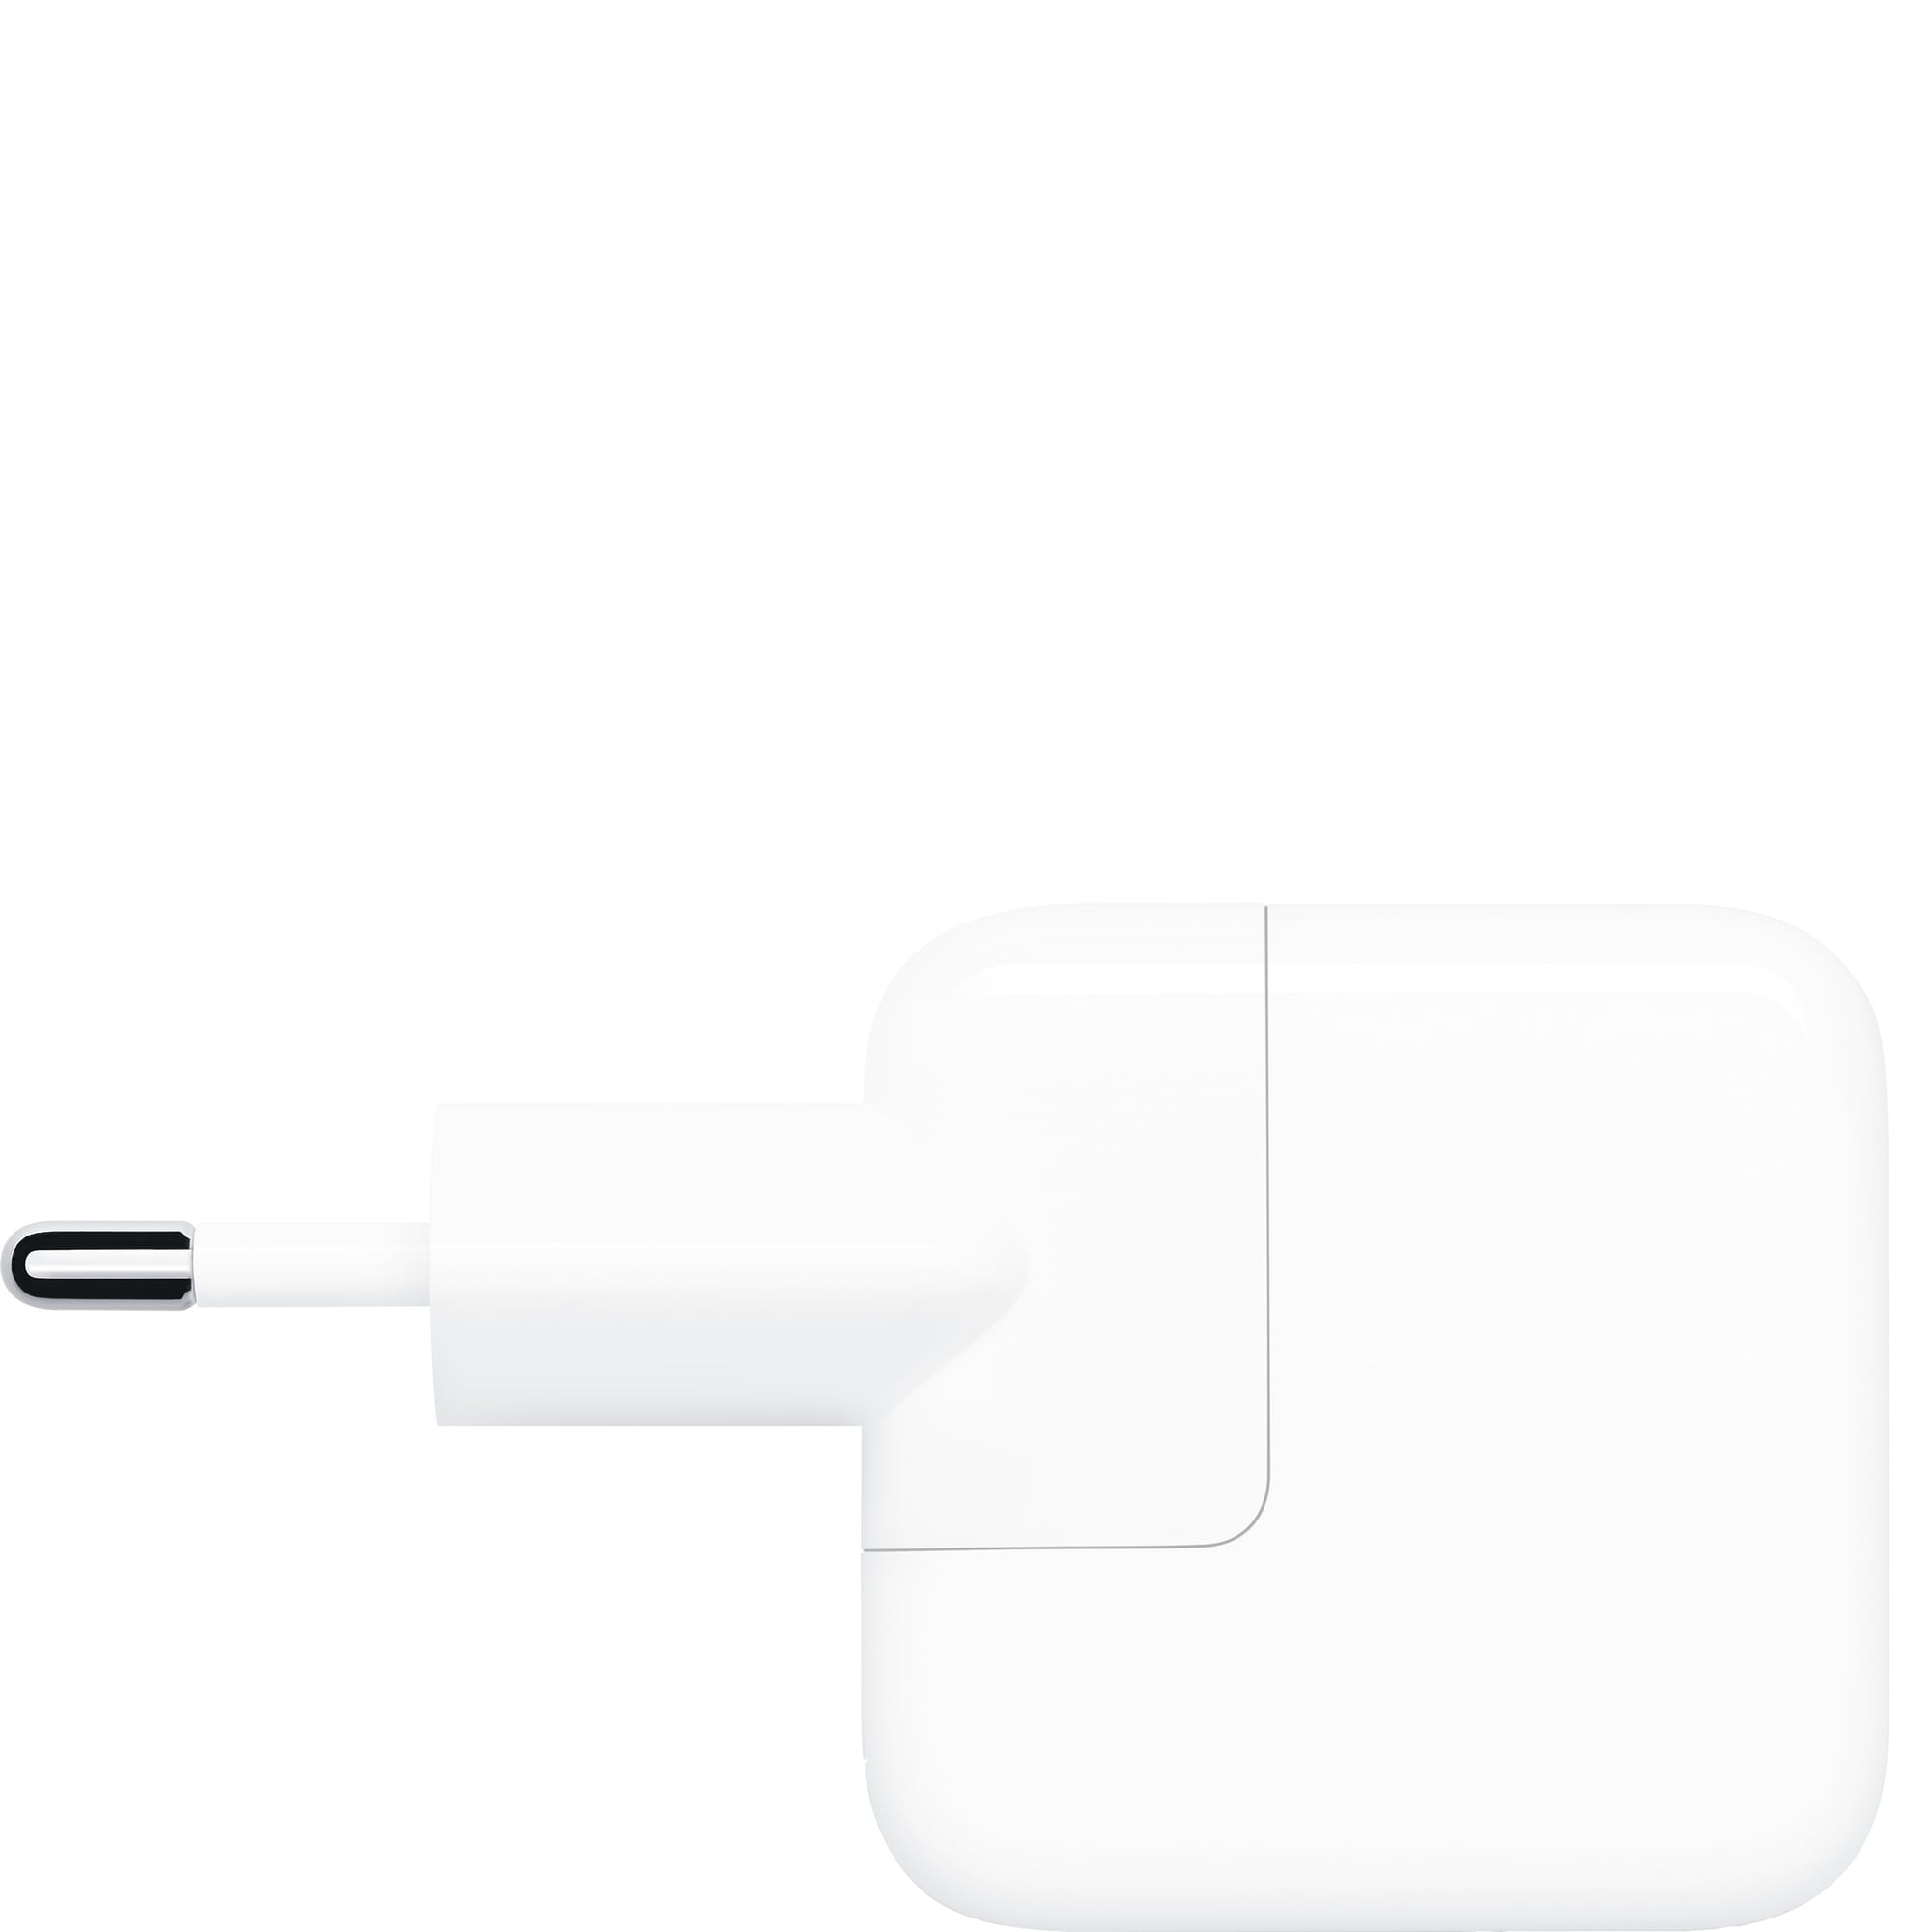 Til ære for træfning Net Apple 12W USB-adapter (hvid) | Elgiganten